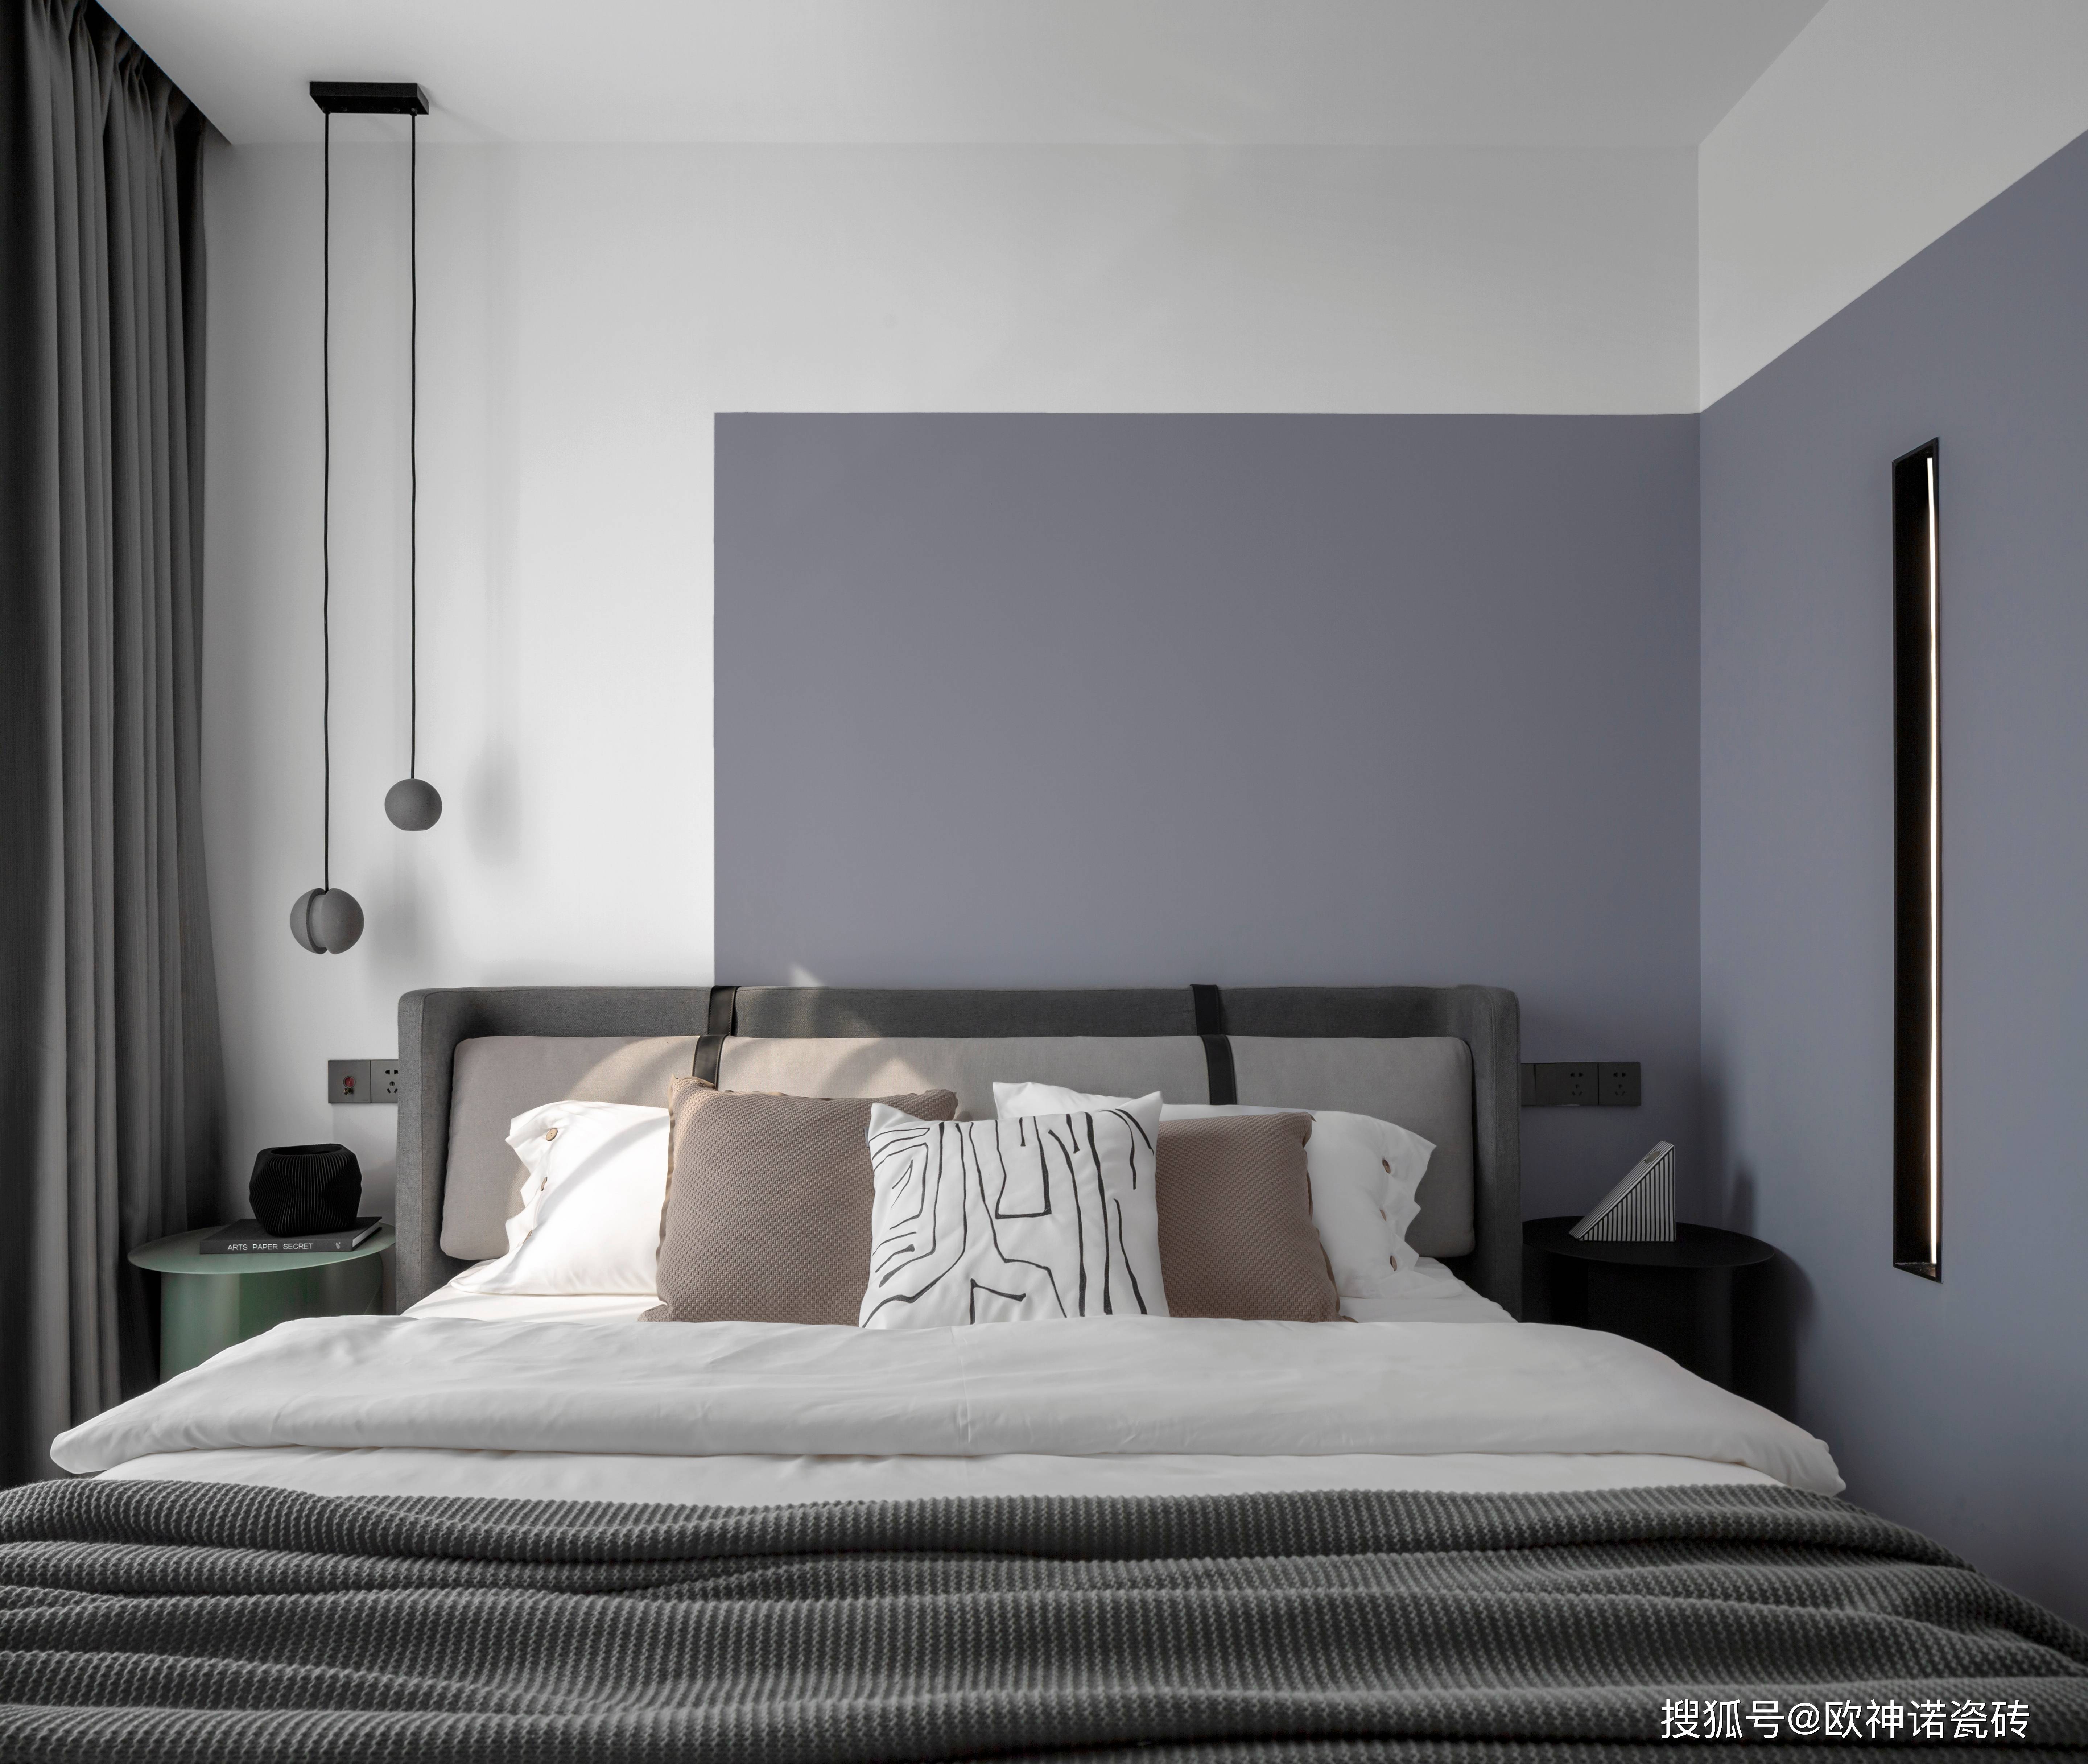 卧室简雅而素净的卧室,以经典自然的木纹砖和高级灰色调为主,塑造独特